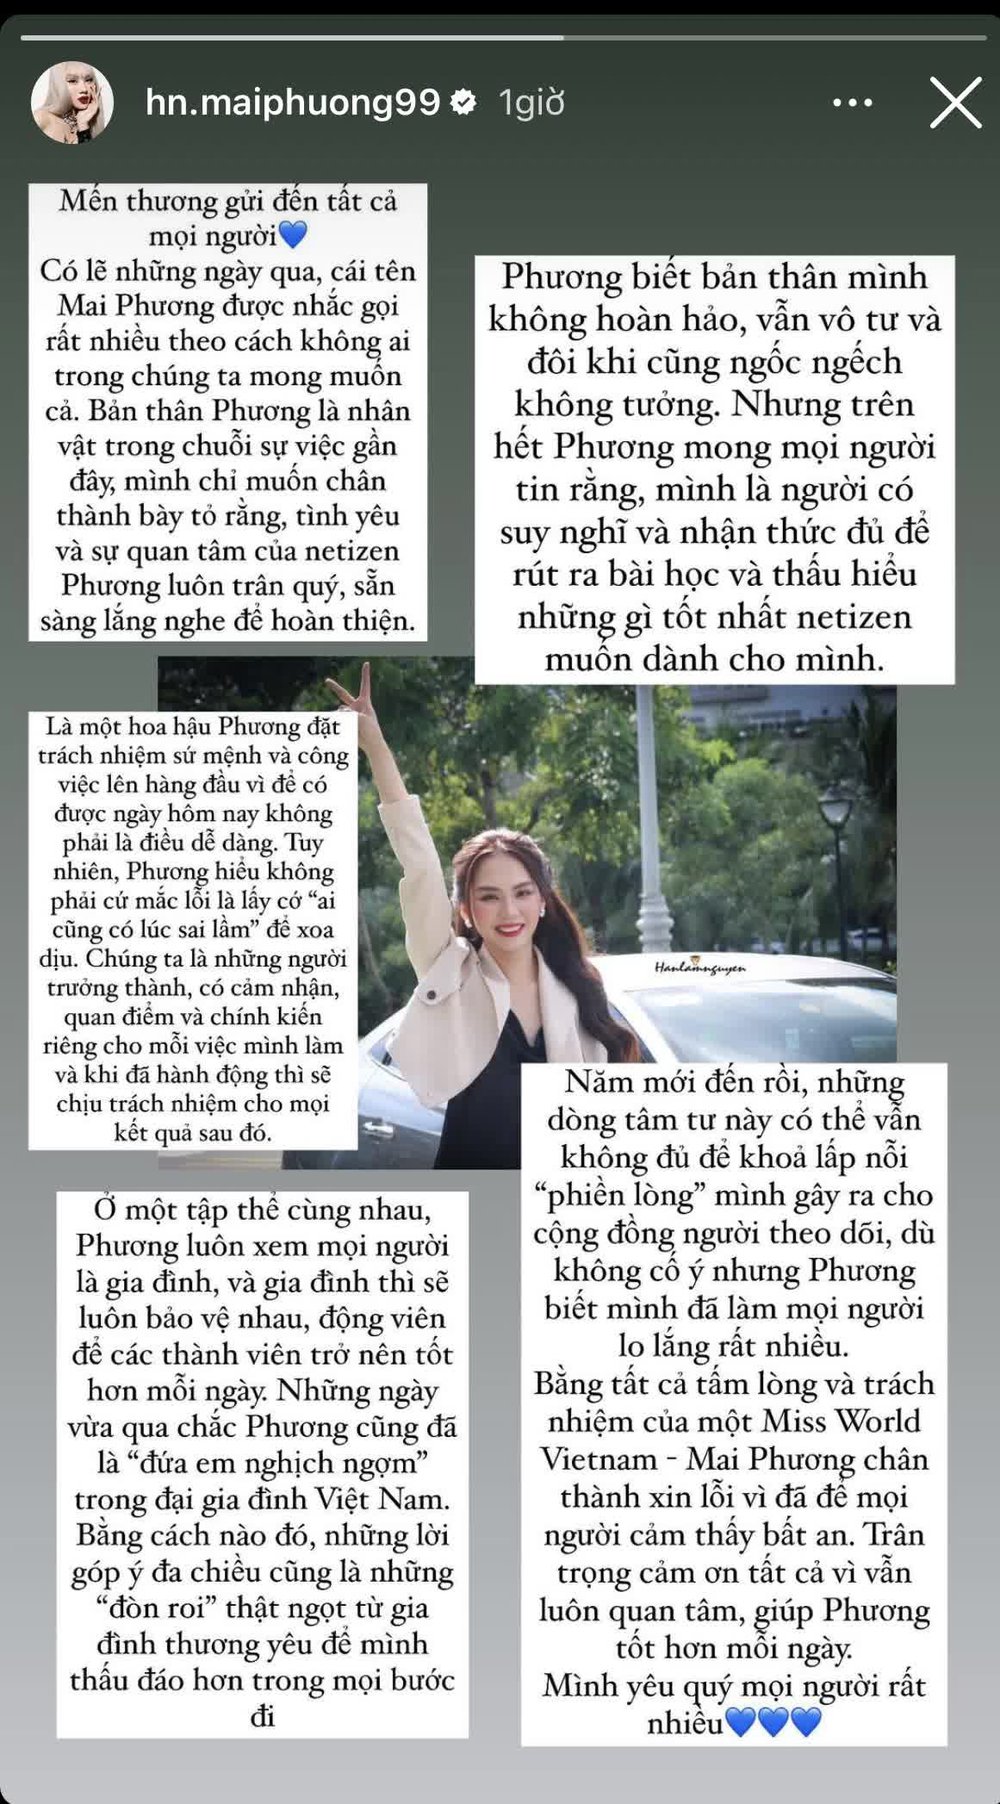 Hoa hậu Mai Phương lên tiếng giữa loạt lùm xùm, netizen tranh cãi vì chi tiết thiếu thiện chí - ảnh 2